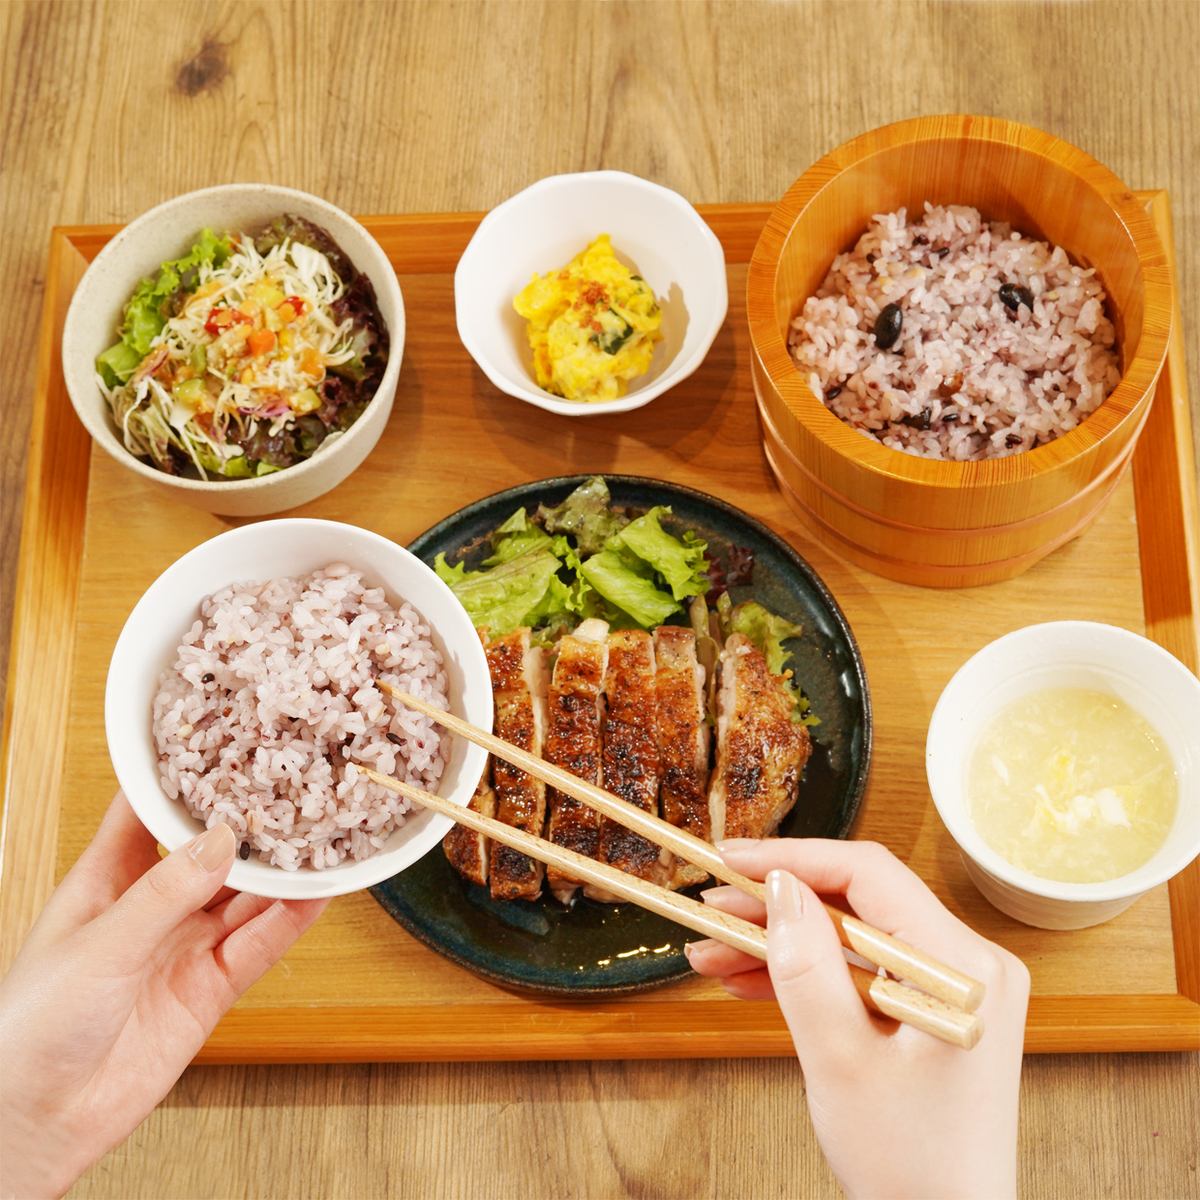 您可以以套餐的形式随意享用典型的亚洲米饭！